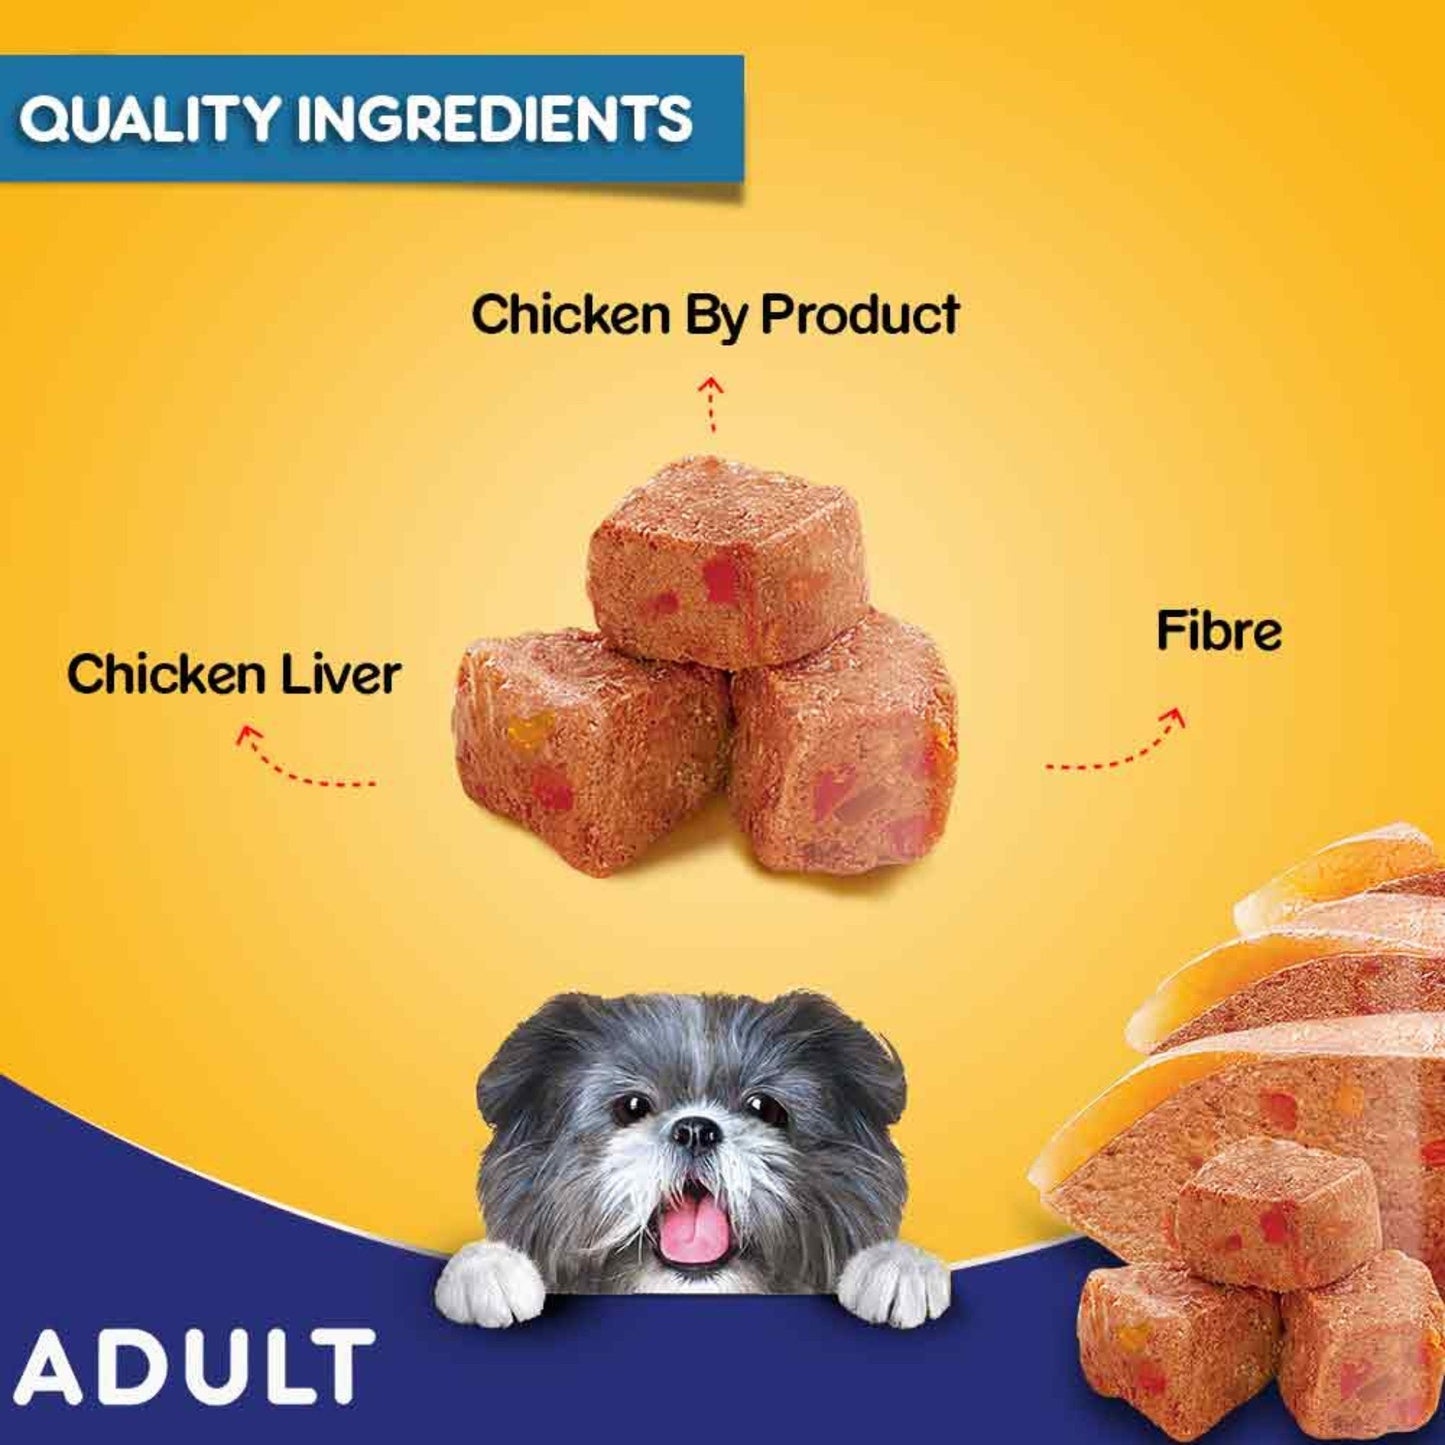 Pedigree Adult Dog Wet Food, Chicken Grilled Liver 70gm, Pack of 75